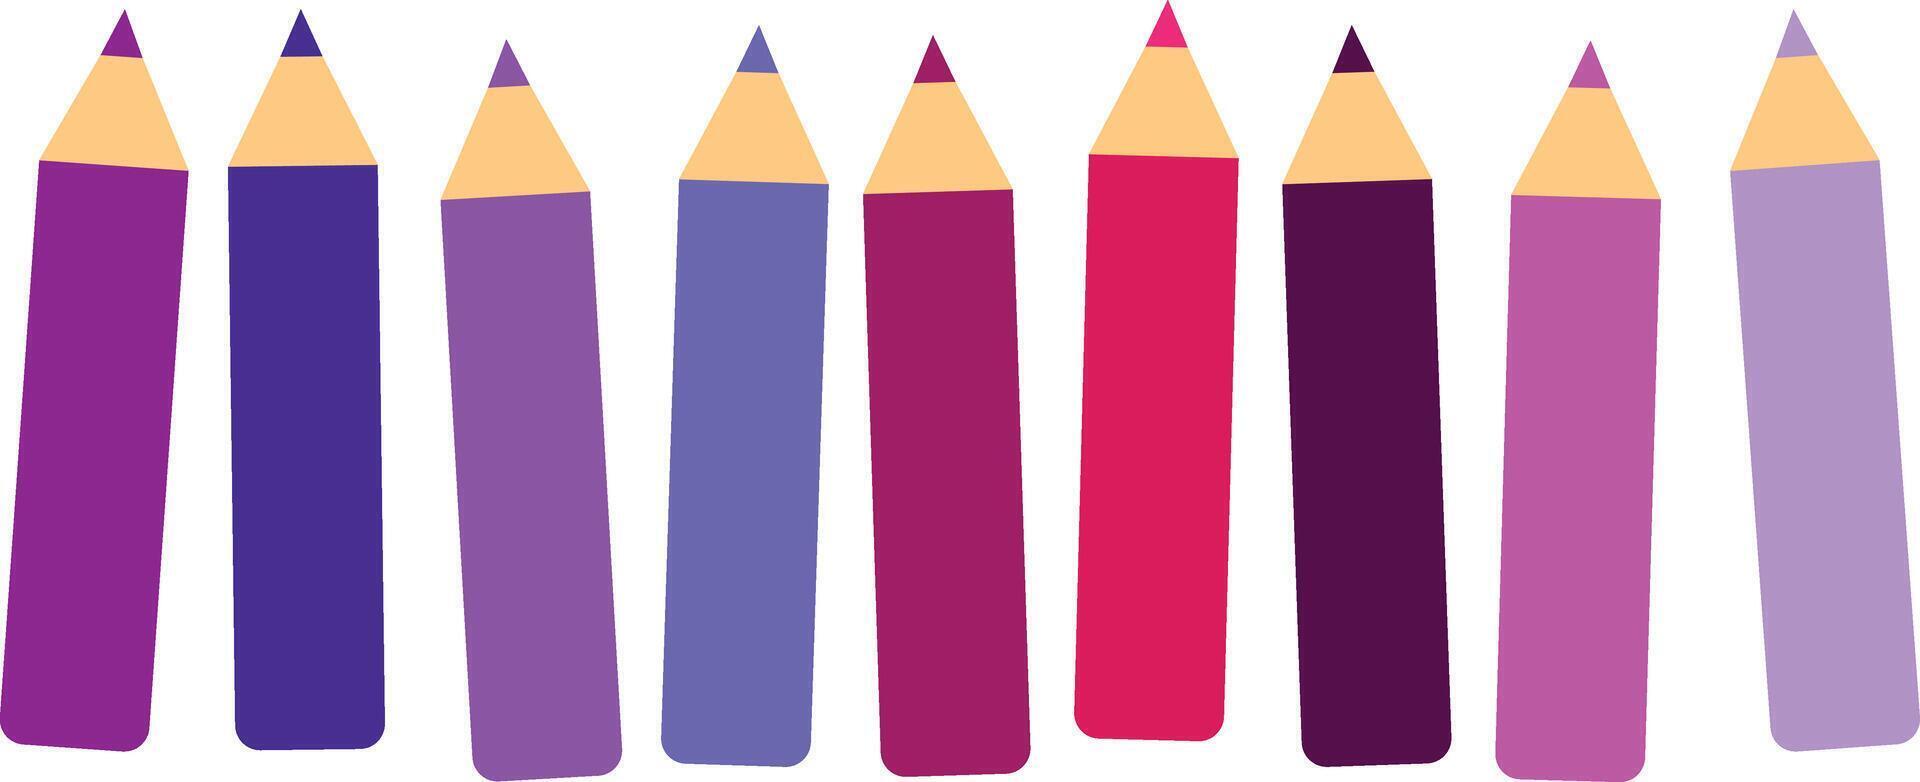 Rosa, lila, Magenta und violett Mädchen Leistung Buntstifte - - kurz Bleistifte lose vereinbart worden - - isoliert Vektor Illustration